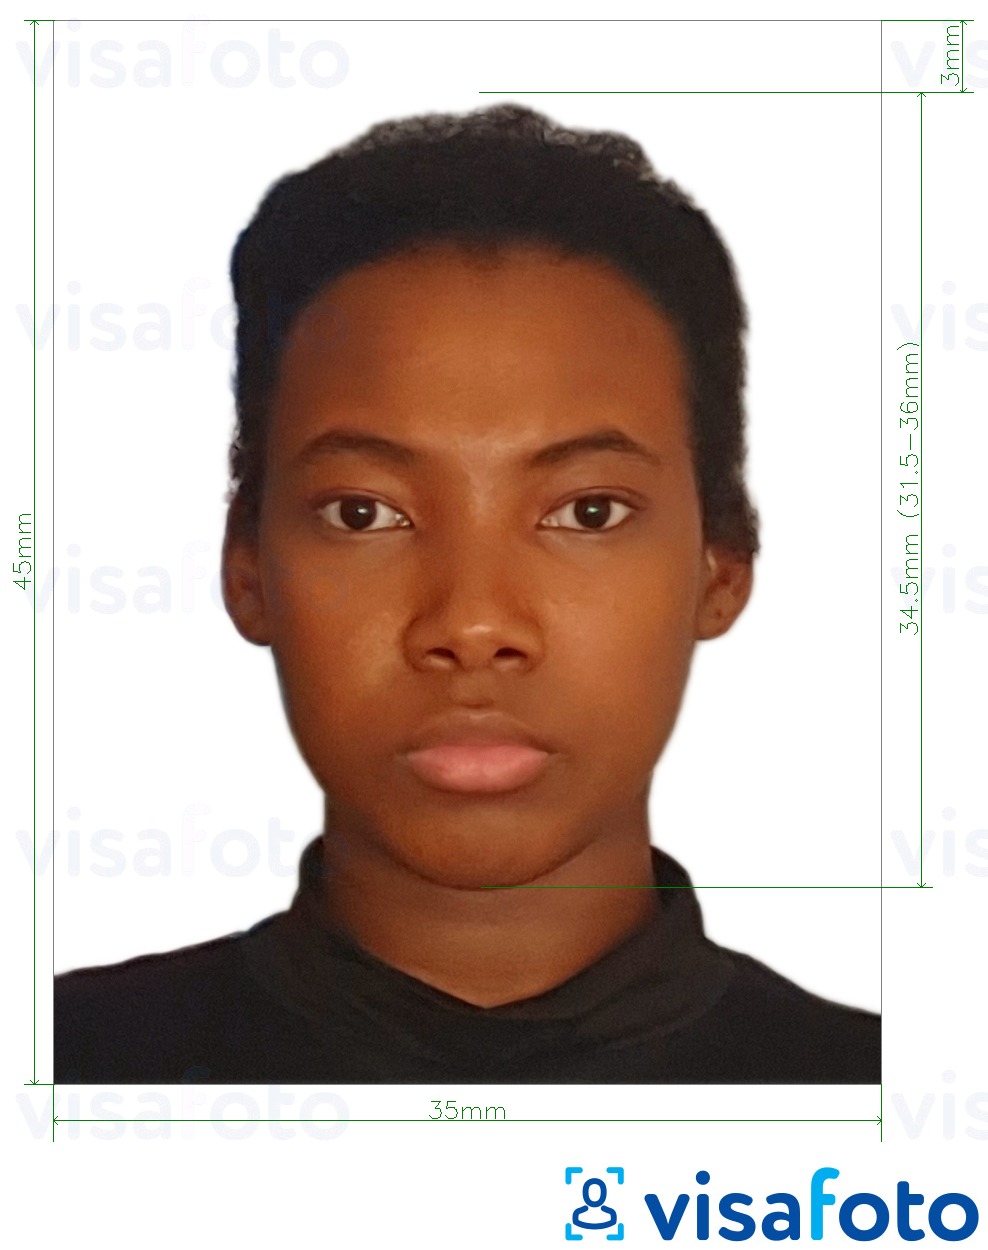 Voorbeeld van foto voor Benin-visum 3.5x4.5 cm (35x45 mm) met exacte maatspecificatie